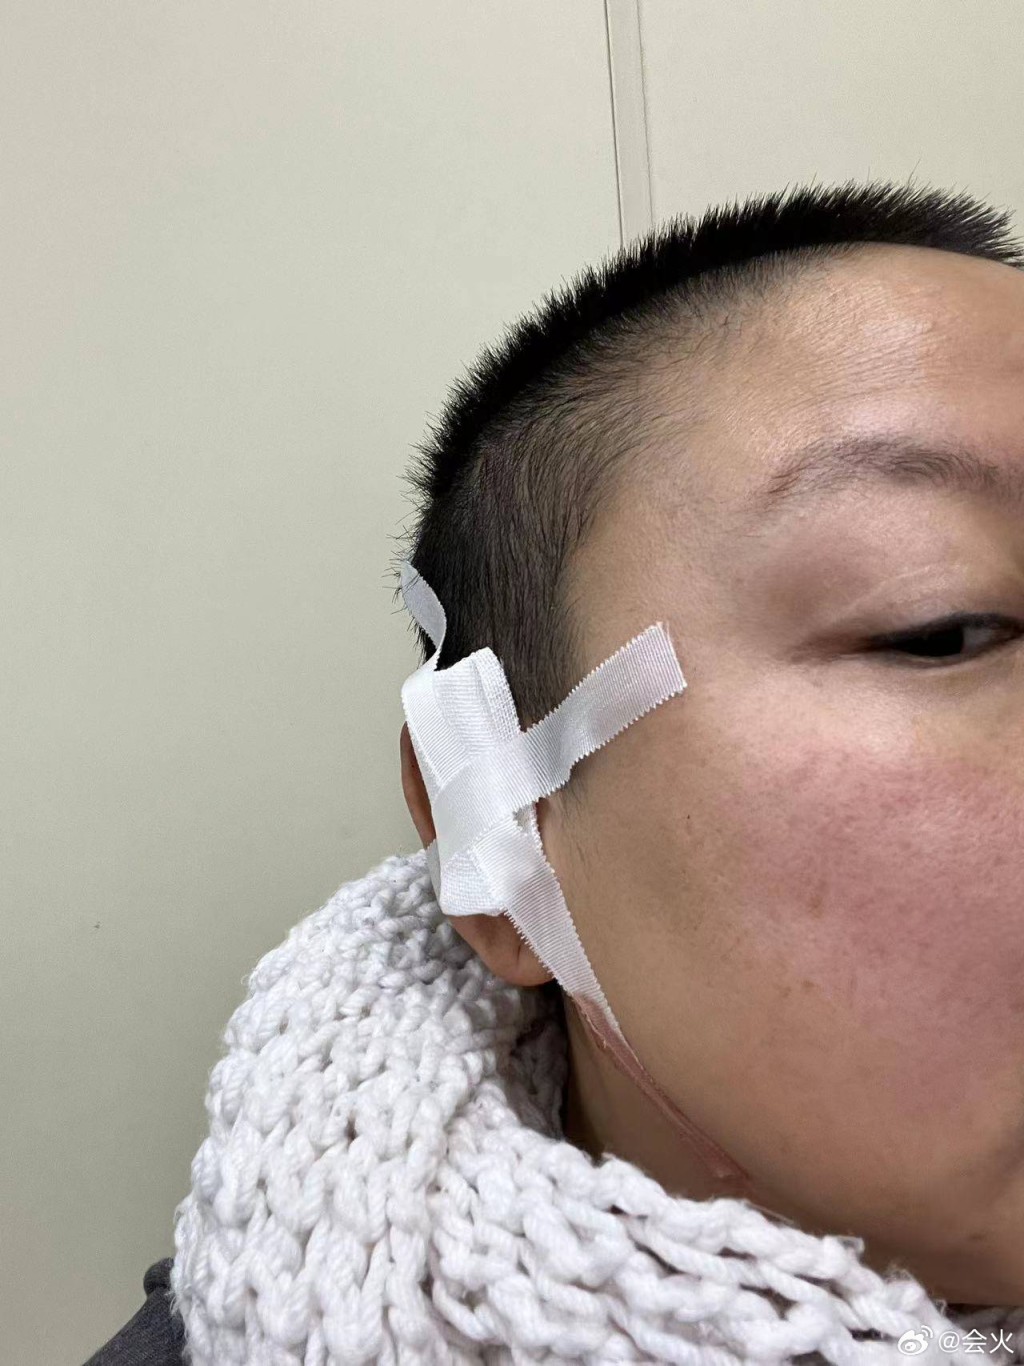 網路上也流出王韵壹去年包紮右耳靠近太陽穴位置受傷的照片。